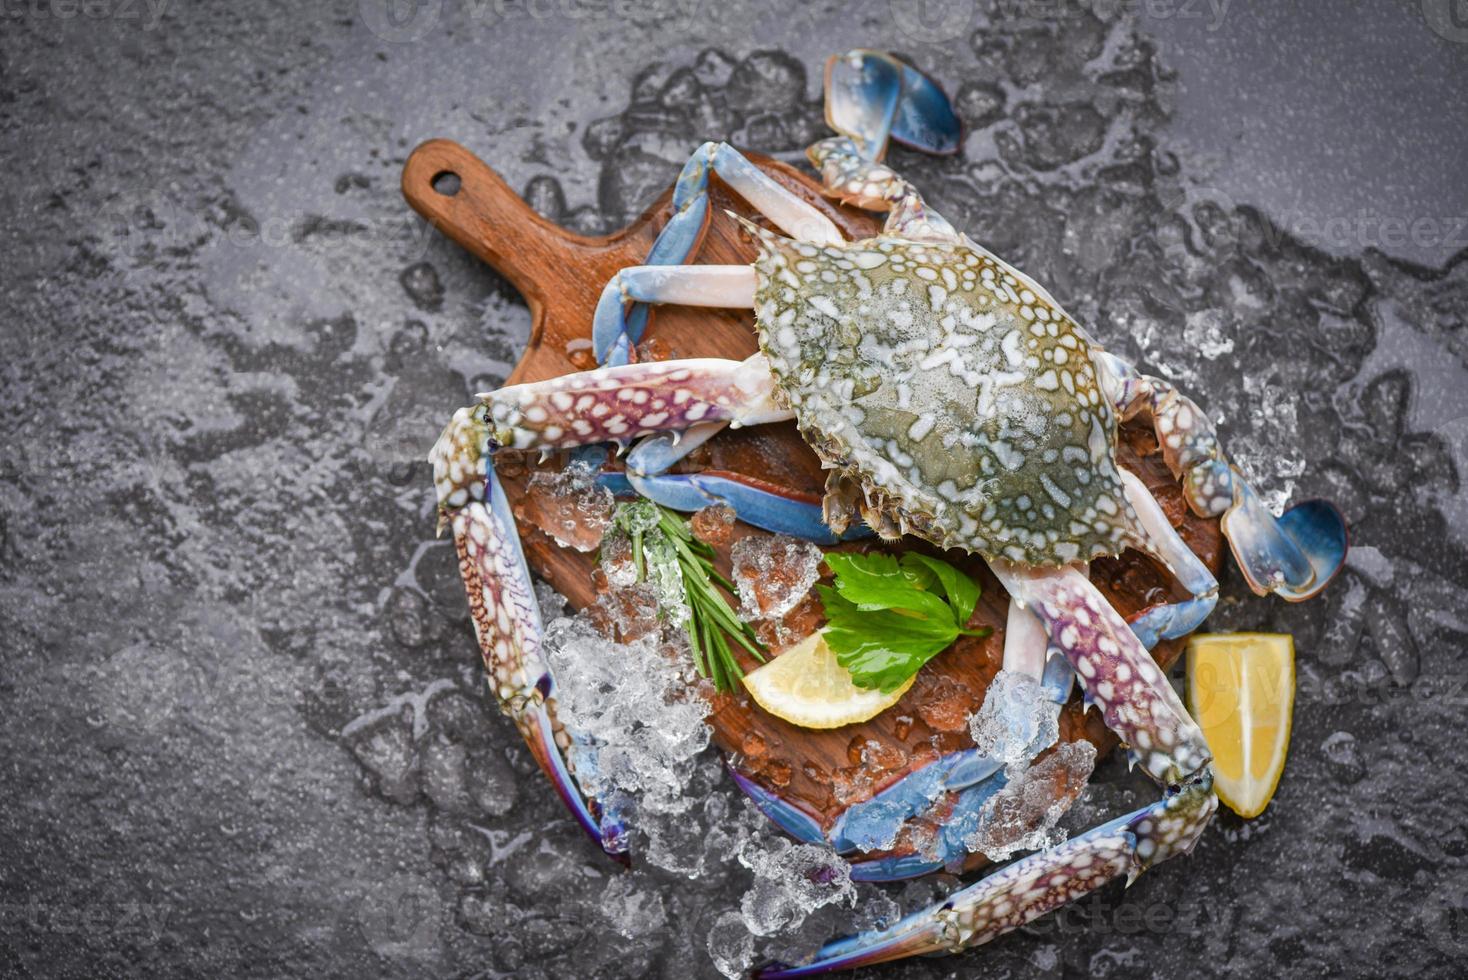 färsk rå krabba med ingredienser citron rosmarin och sallad för att göra lagad mat på is på marknaden - skaldjur fryst, blå simkrabba foto